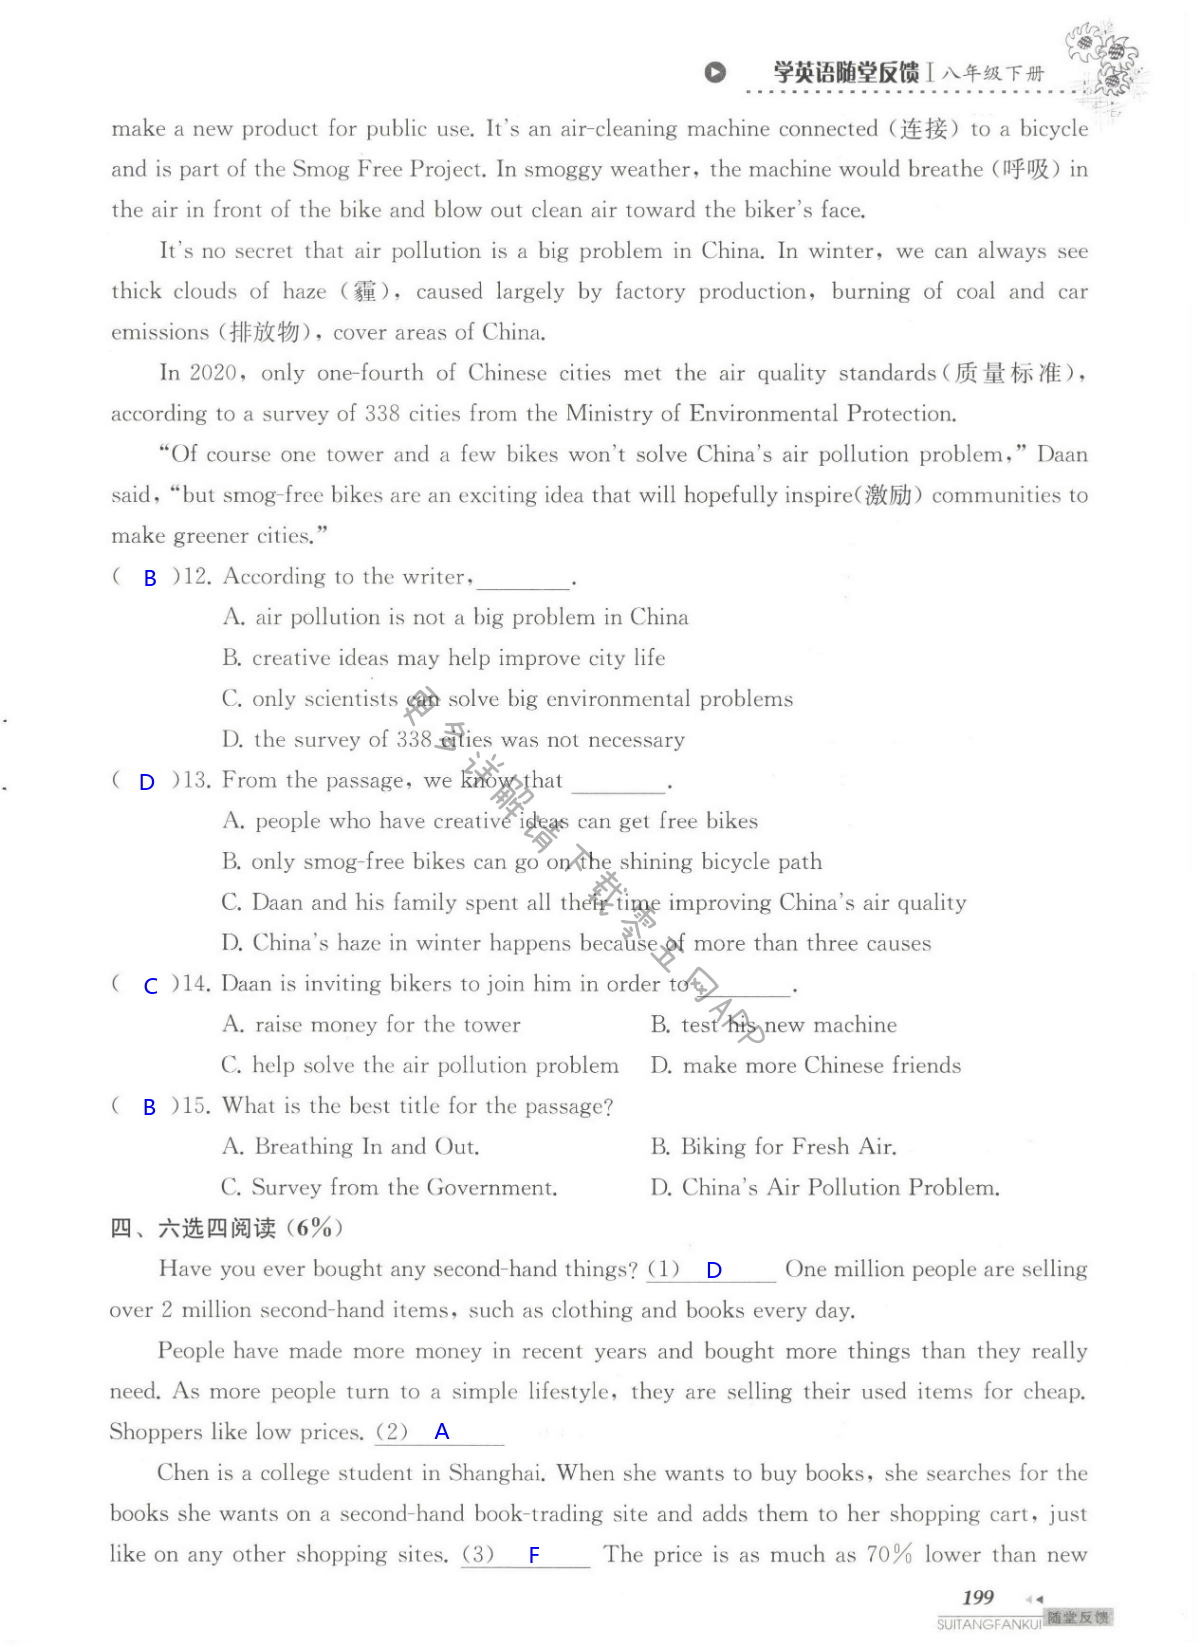 单元综合测试卷  Test for Unit 8 of 8B - 第199页